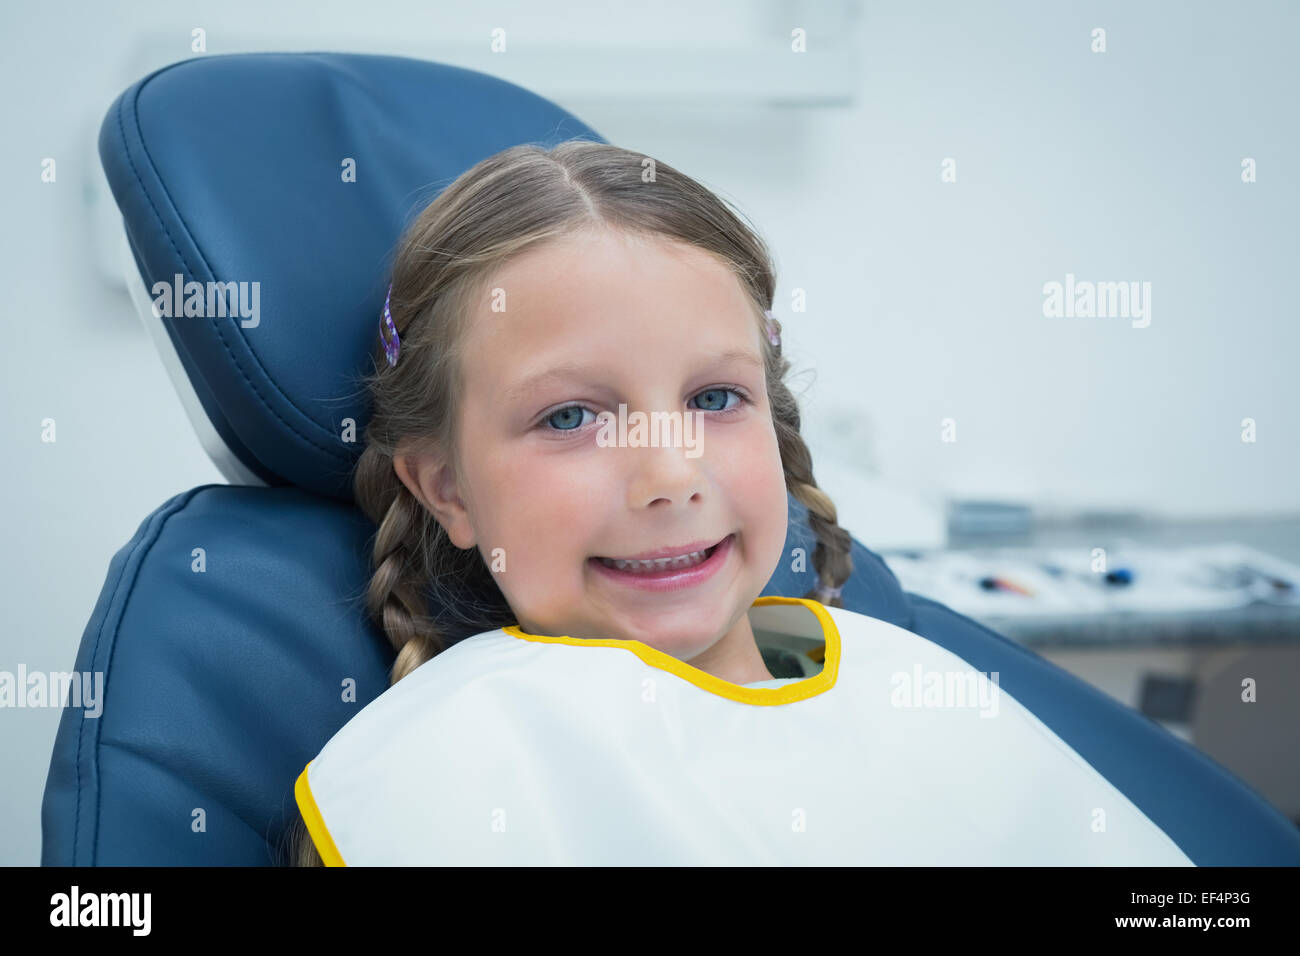 Smiling girl waiting for dental exam Stock Photo